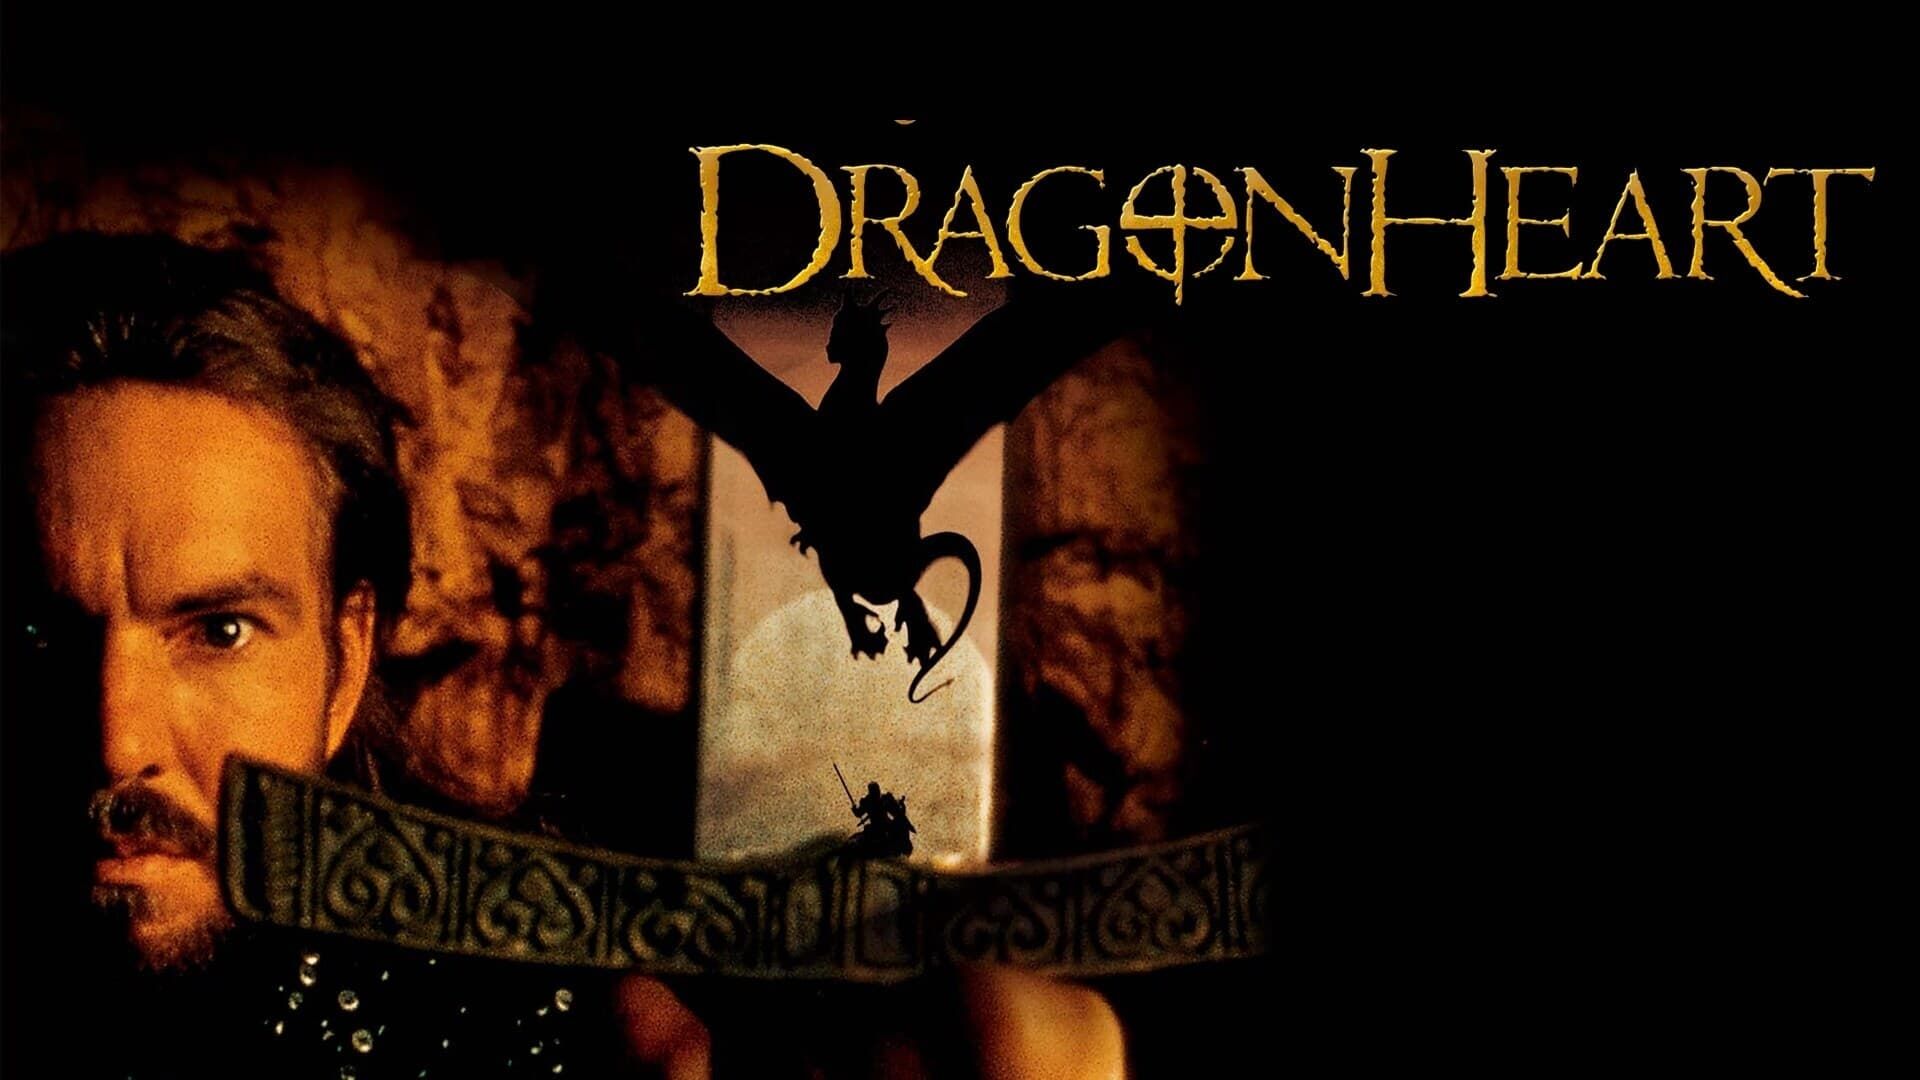 دانلود فیلم DragonHeart 1996